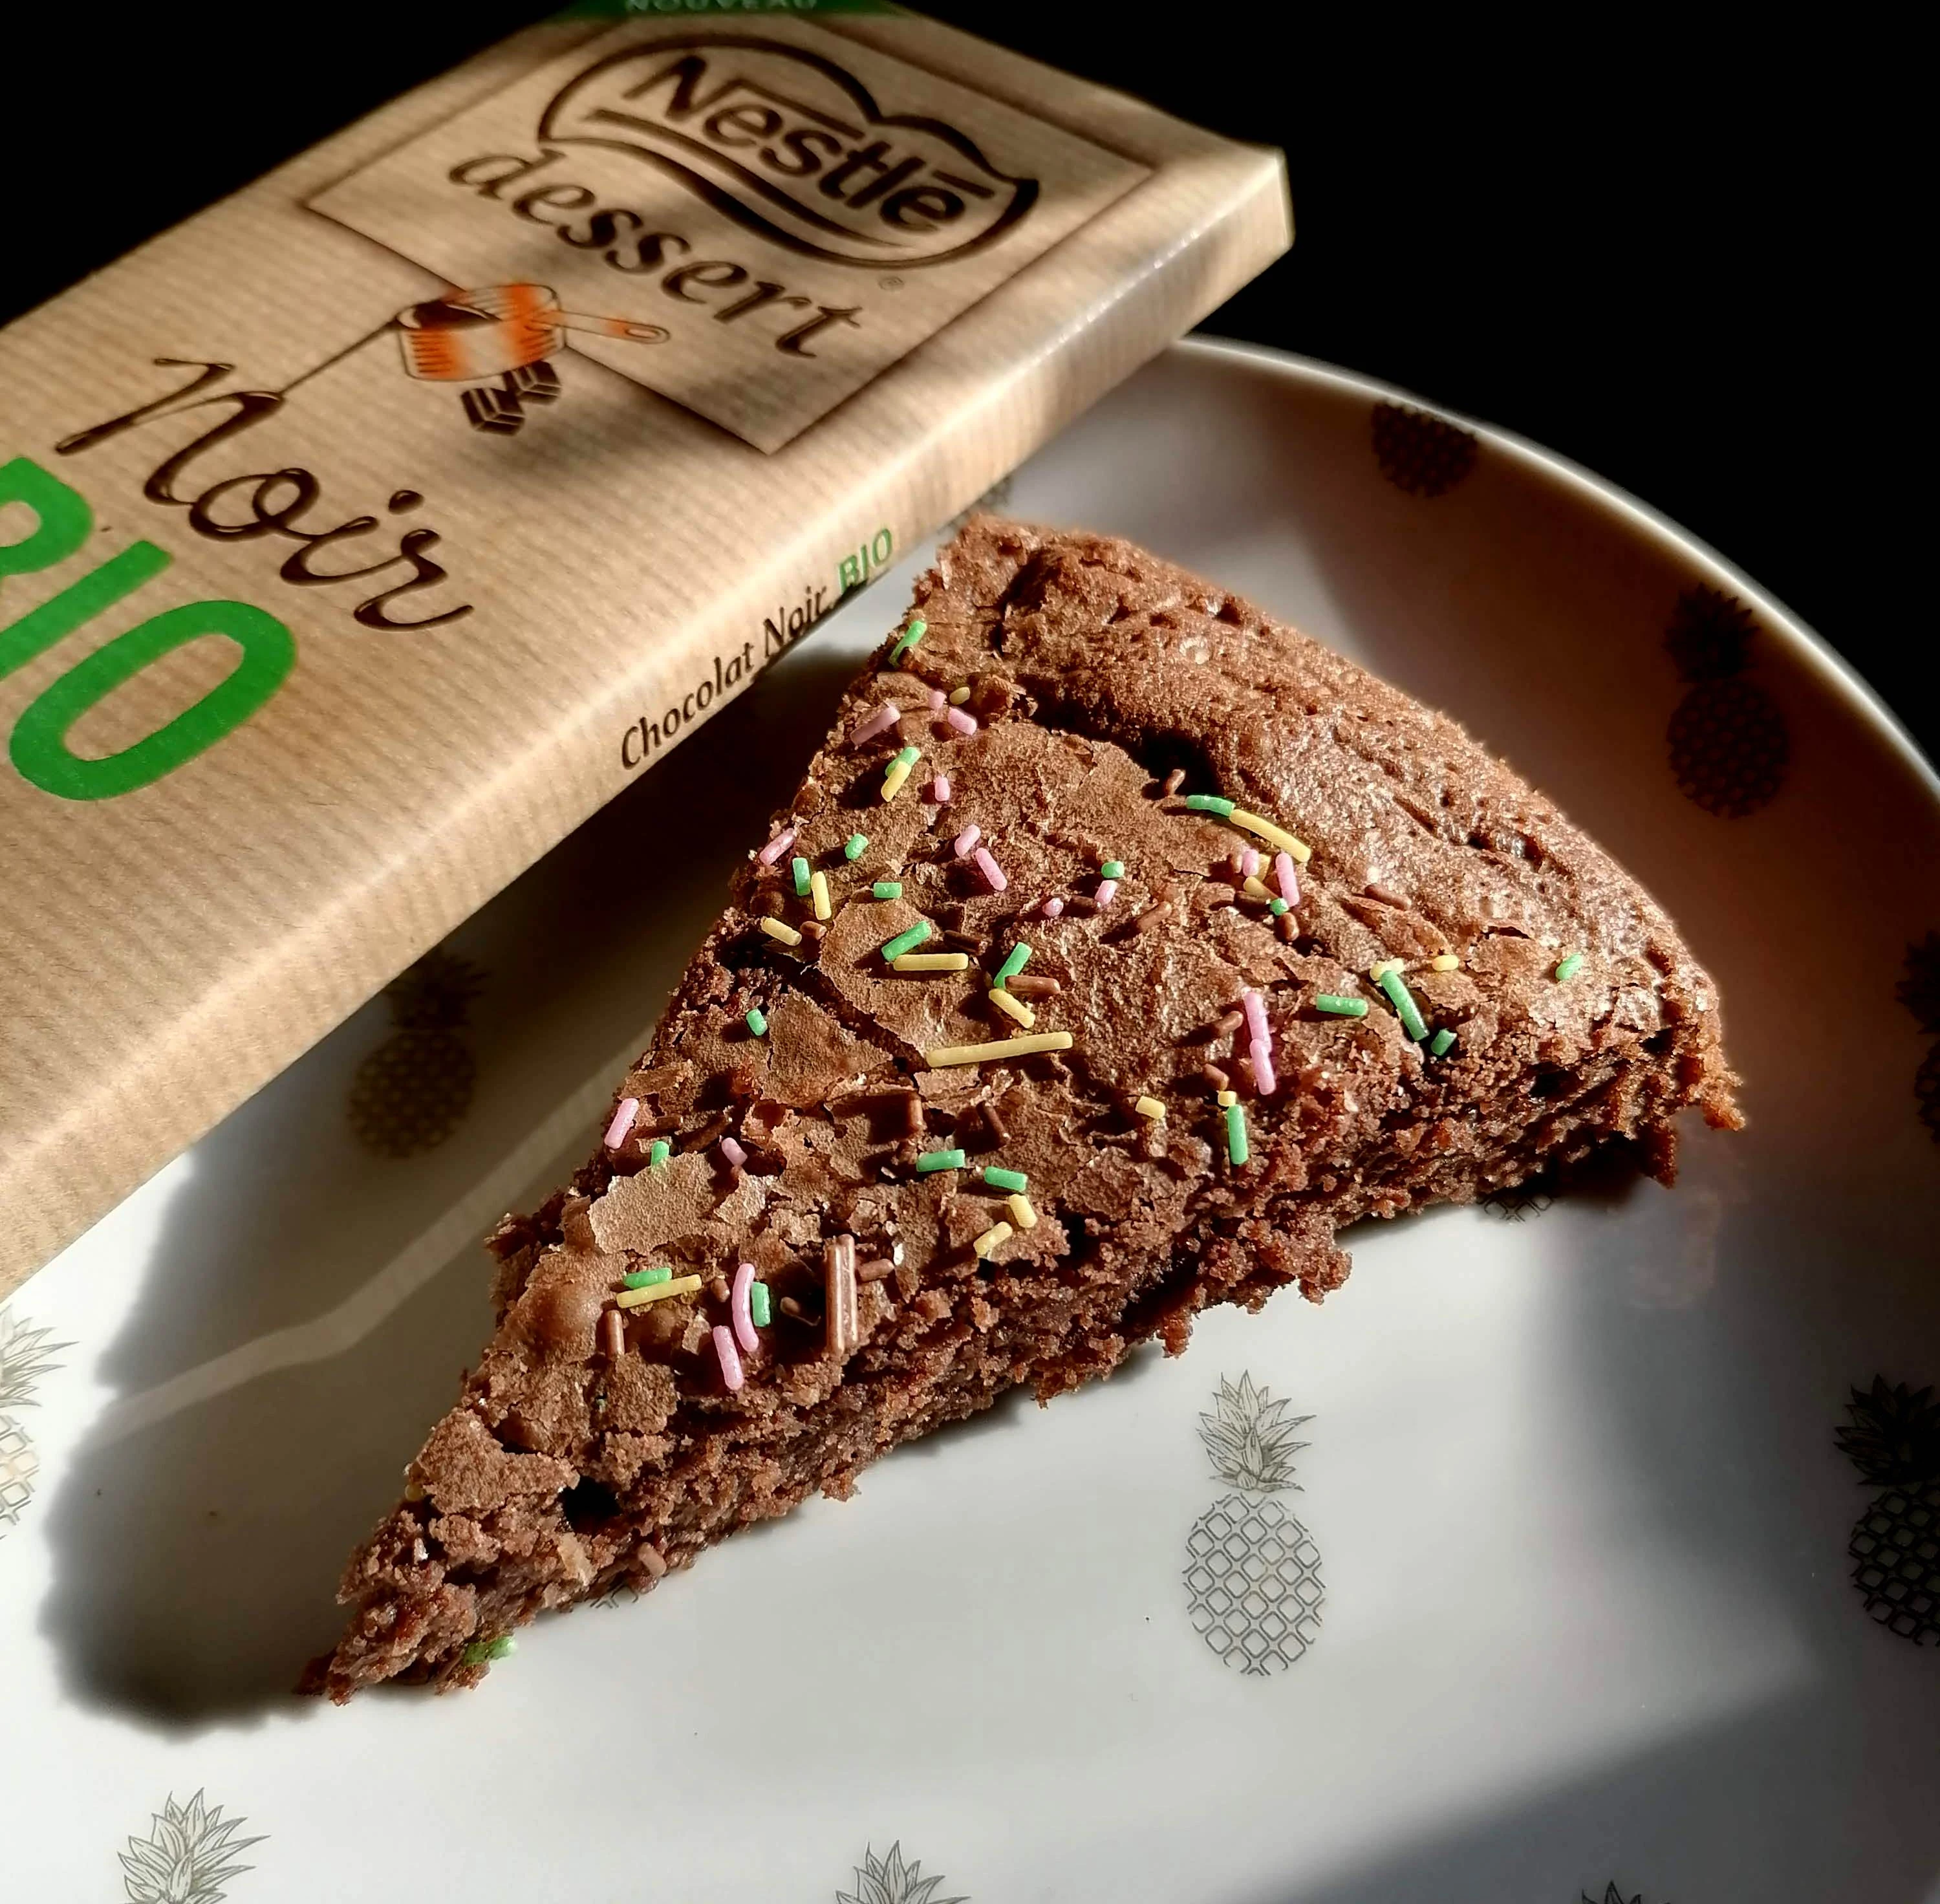 Un fondant au chocolat délicieux avec Nestlé Bio dessert! 🍫